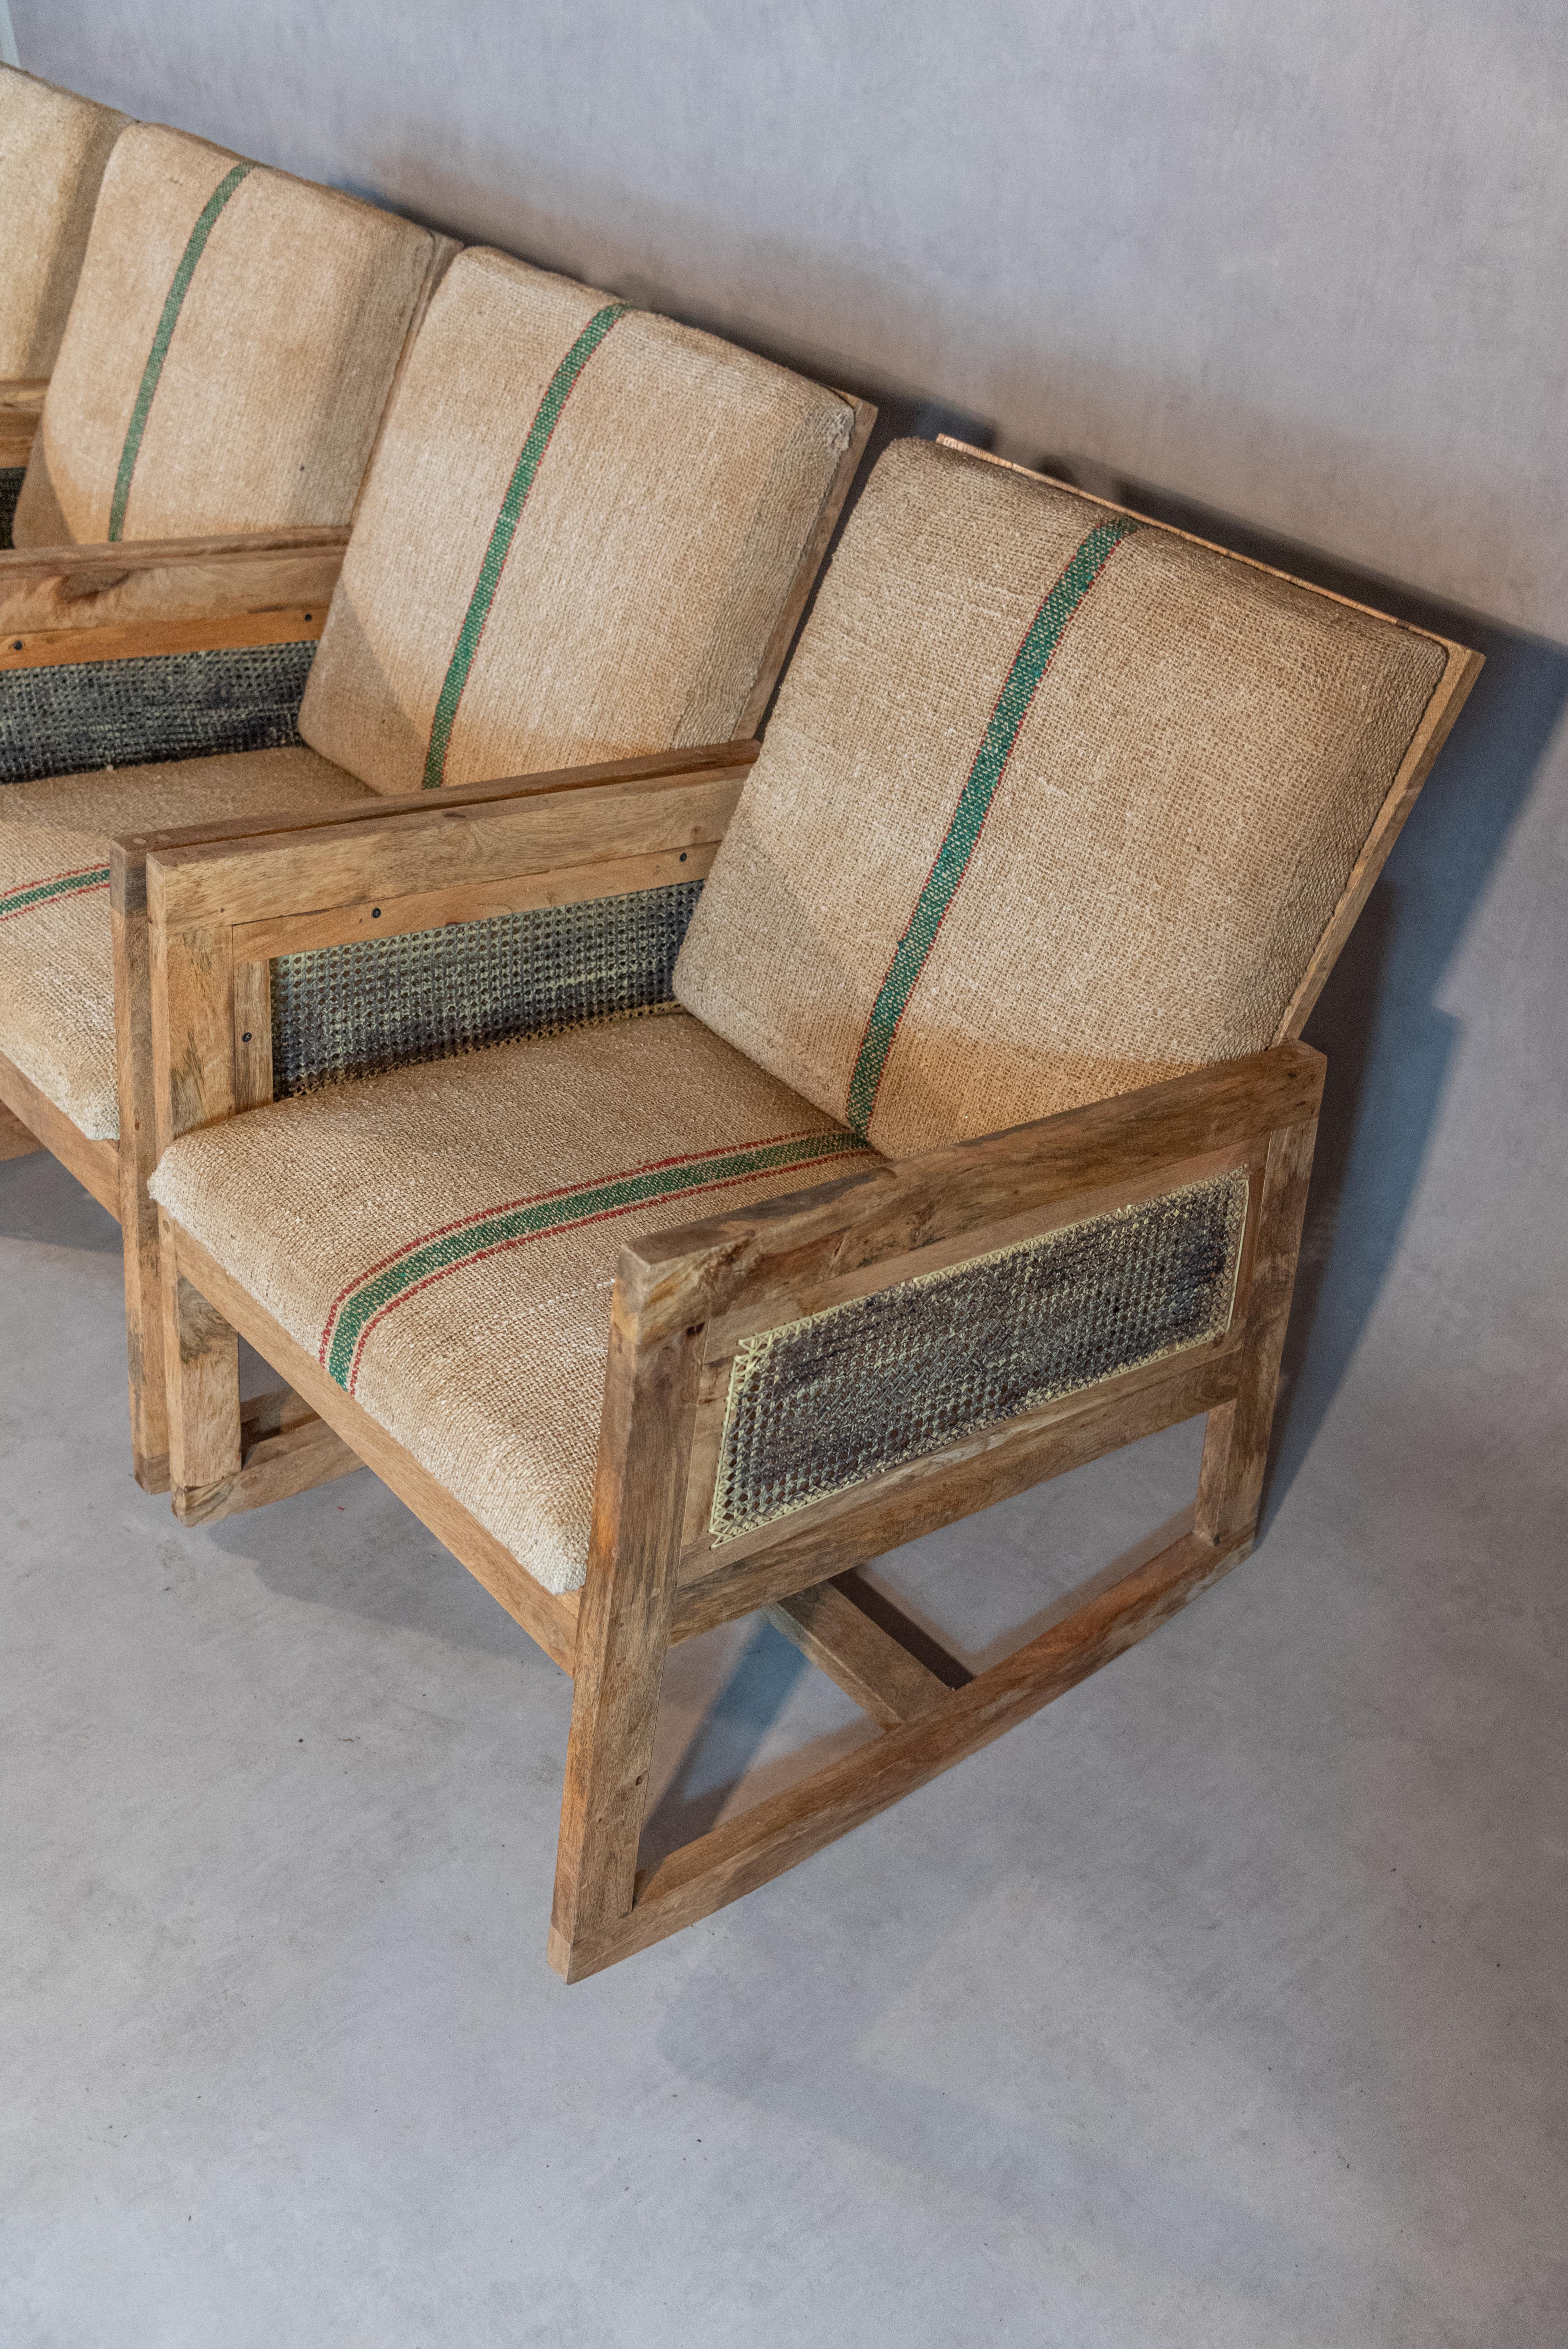 
Wir stellen Ihnen ein reizvolles Set aus vier französischen Schaukelstühlen vor, die jeweils aus edlem Mahagoniholz gefertigt sind. Diese Stühle strahlen eine zeitlose Eleganz aus, die rustikalen Charme mit klassischer Raffinesse verbindet.

Die